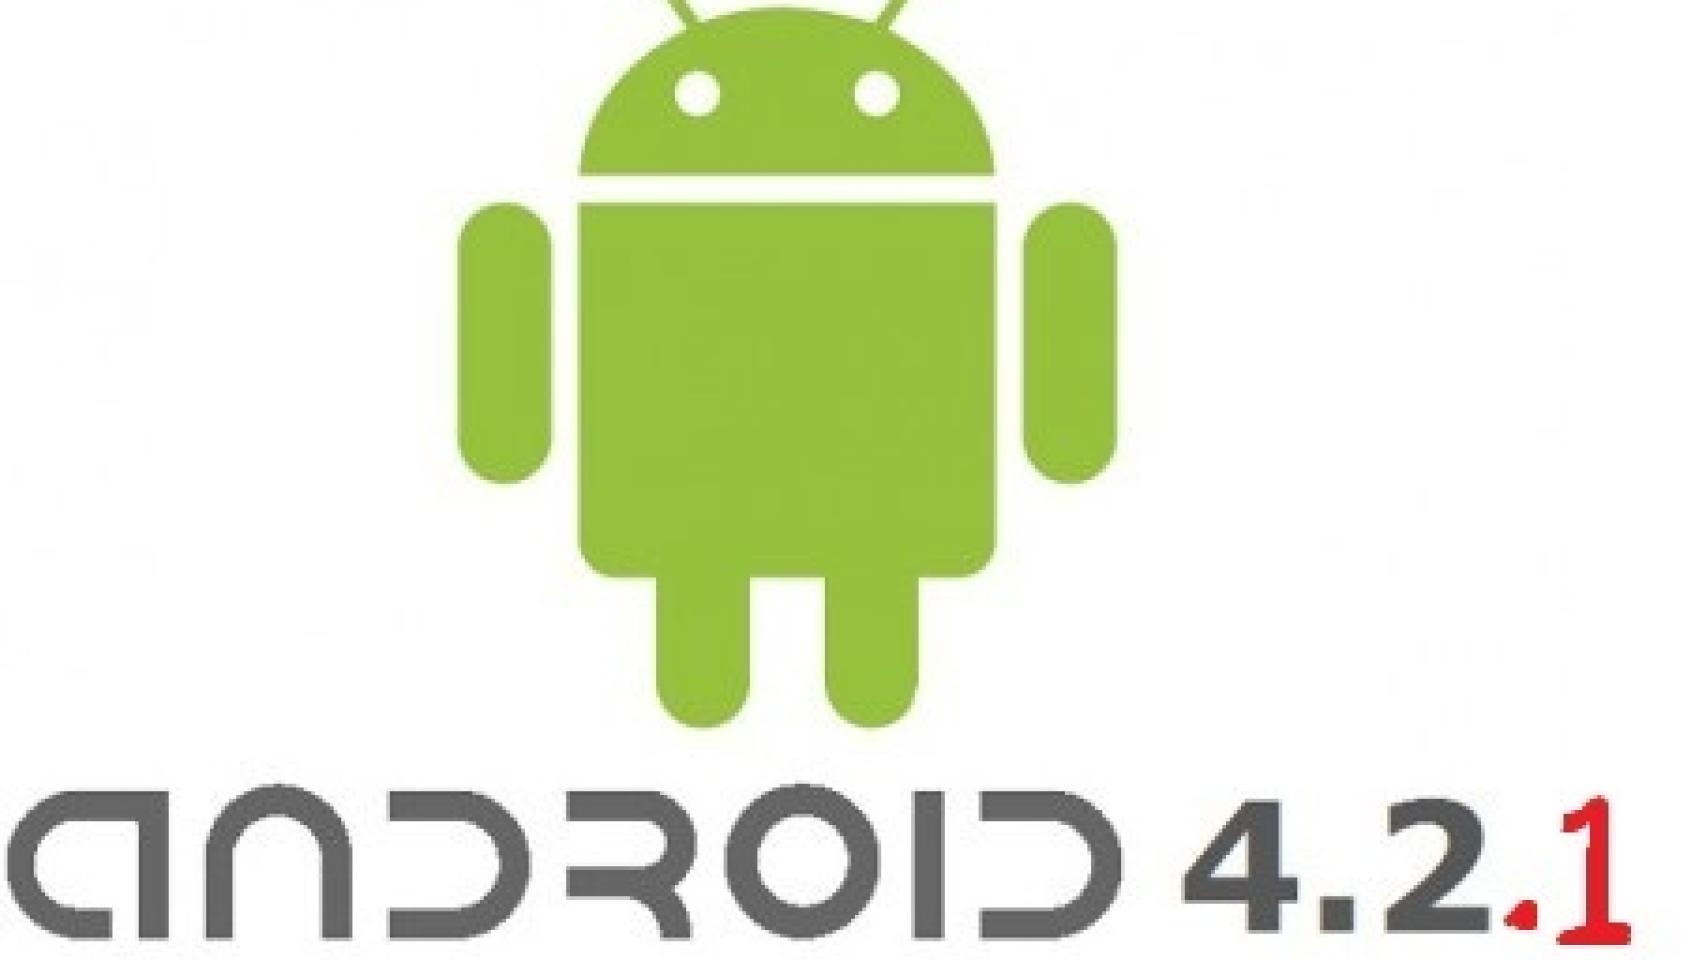 Android 4.2.1 ya disponible en los Nexus: Lista de novedades y correciones